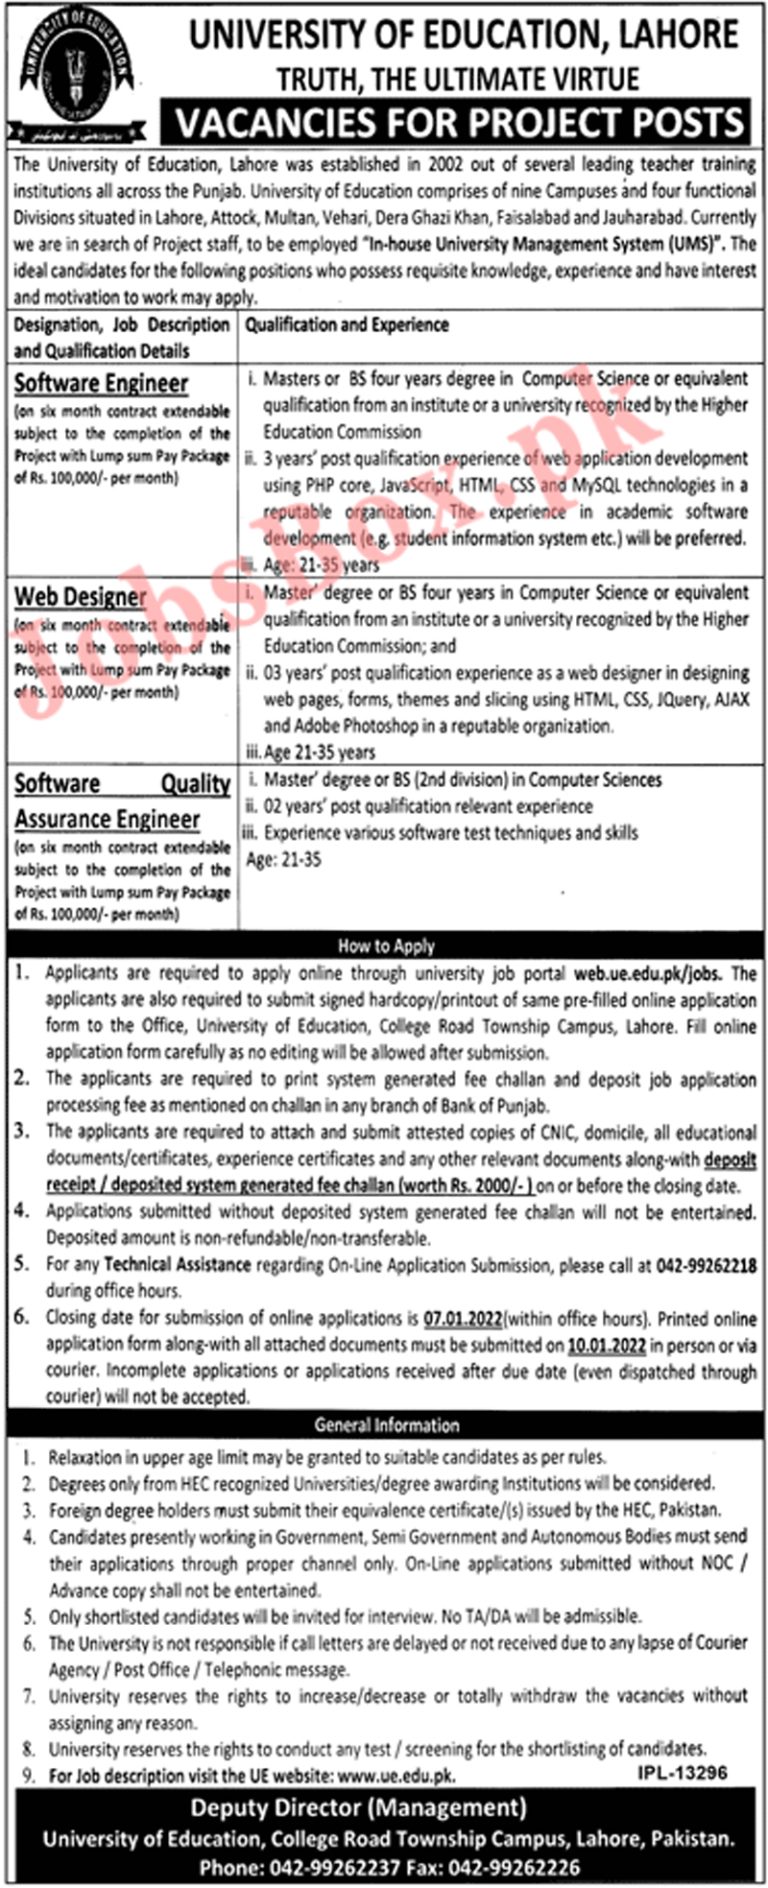 www.ue.edu.pk - UE University of Education Jobs 2022 in Pakistan